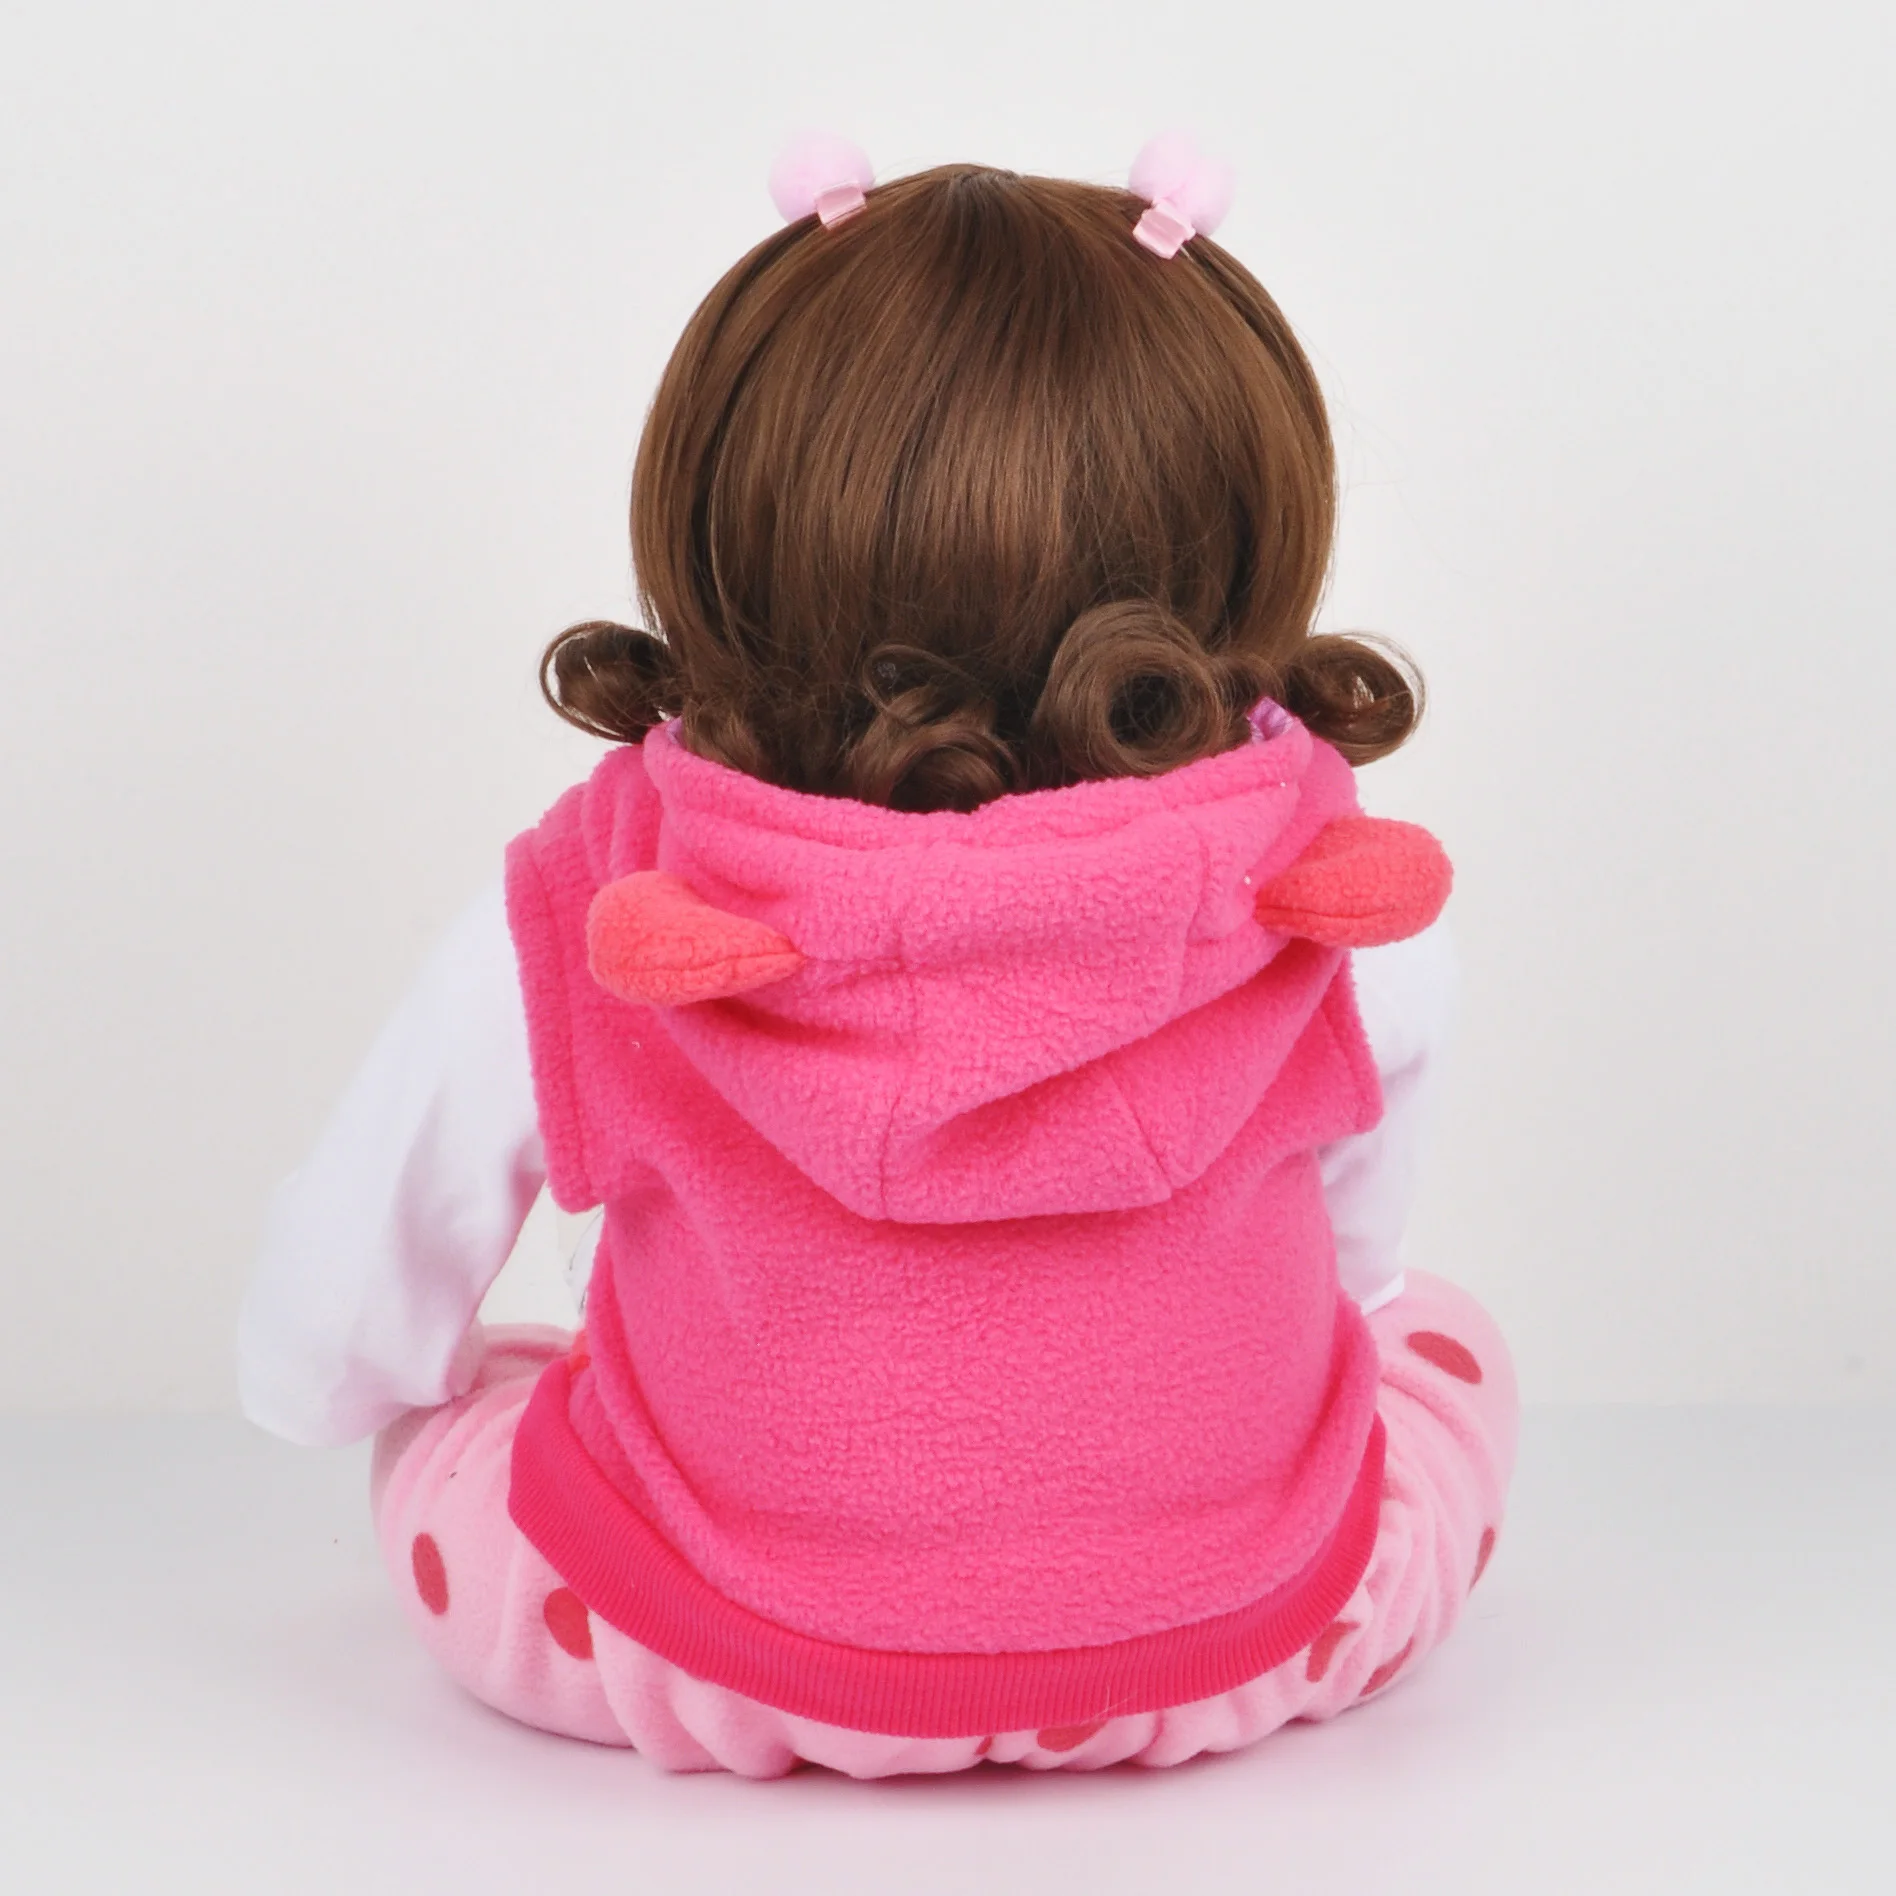 17 дюймов 45 см силиконовая кукла-младенец Bebe Bonecas ребенок Реалистичная ребенок Menino Рождественский подарок игрушки для детей Жираф